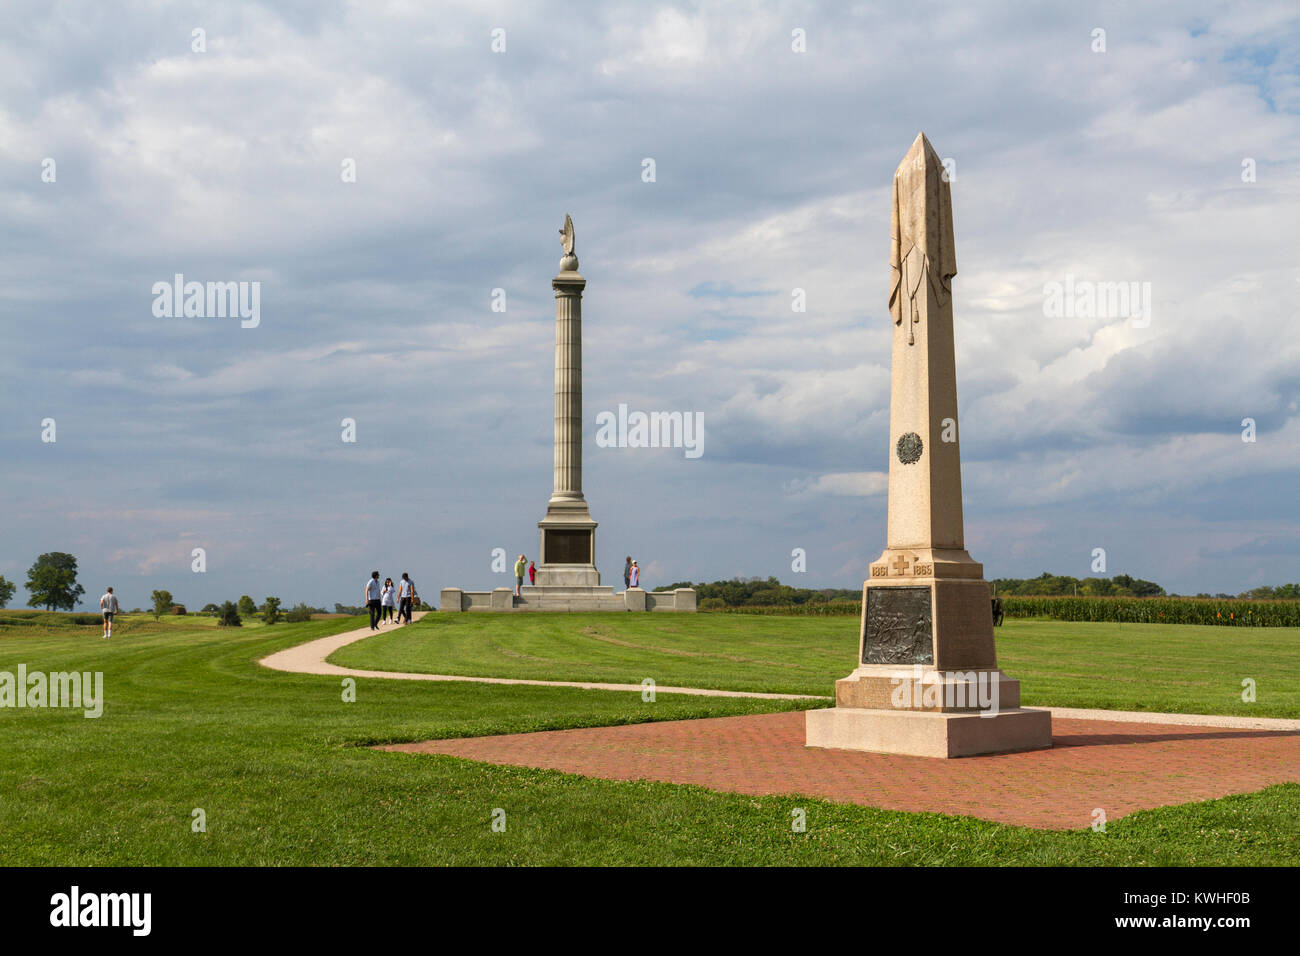 Le 20e d'infanterie de New York le monument et Monument de l'État de New York, champ de bataille National d'Antietam, Sharpsburg, MD, United States. Banque D'Images